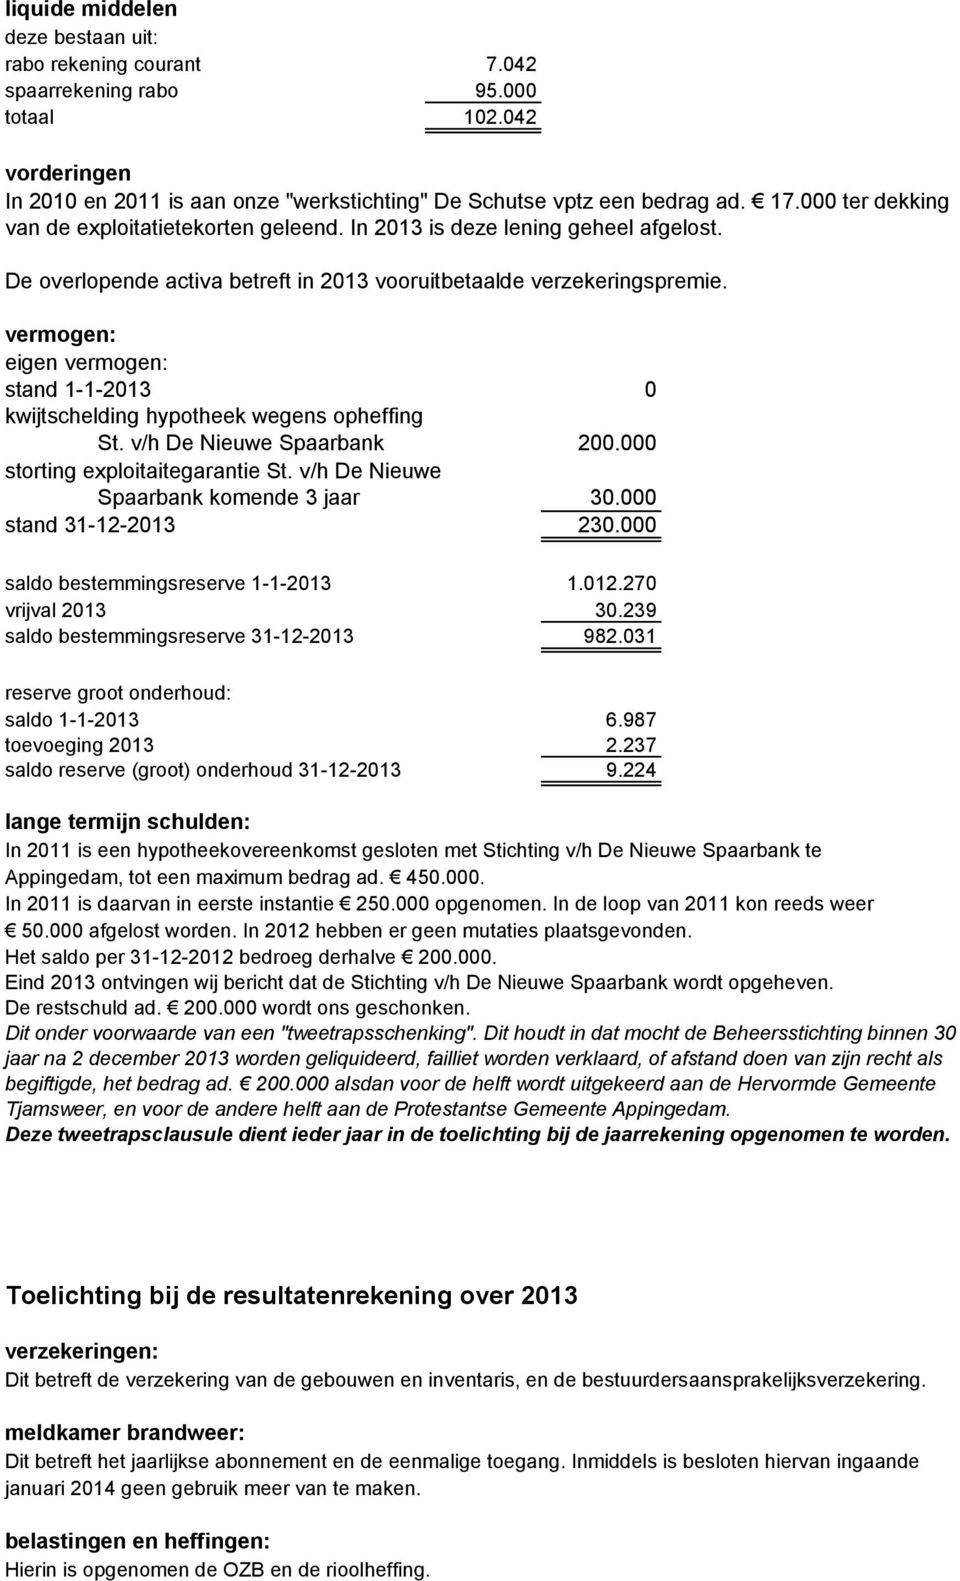 vermogen: eigen vermogen: stand 1-1-2013 0 kwijtschelding hypotheek wegens opheffing St. v/h De Nieuwe Spaarbank 200.000 storting exploitaitegarantie St. v/h De Nieuwe Spaarbank komende 3 jaar 30.